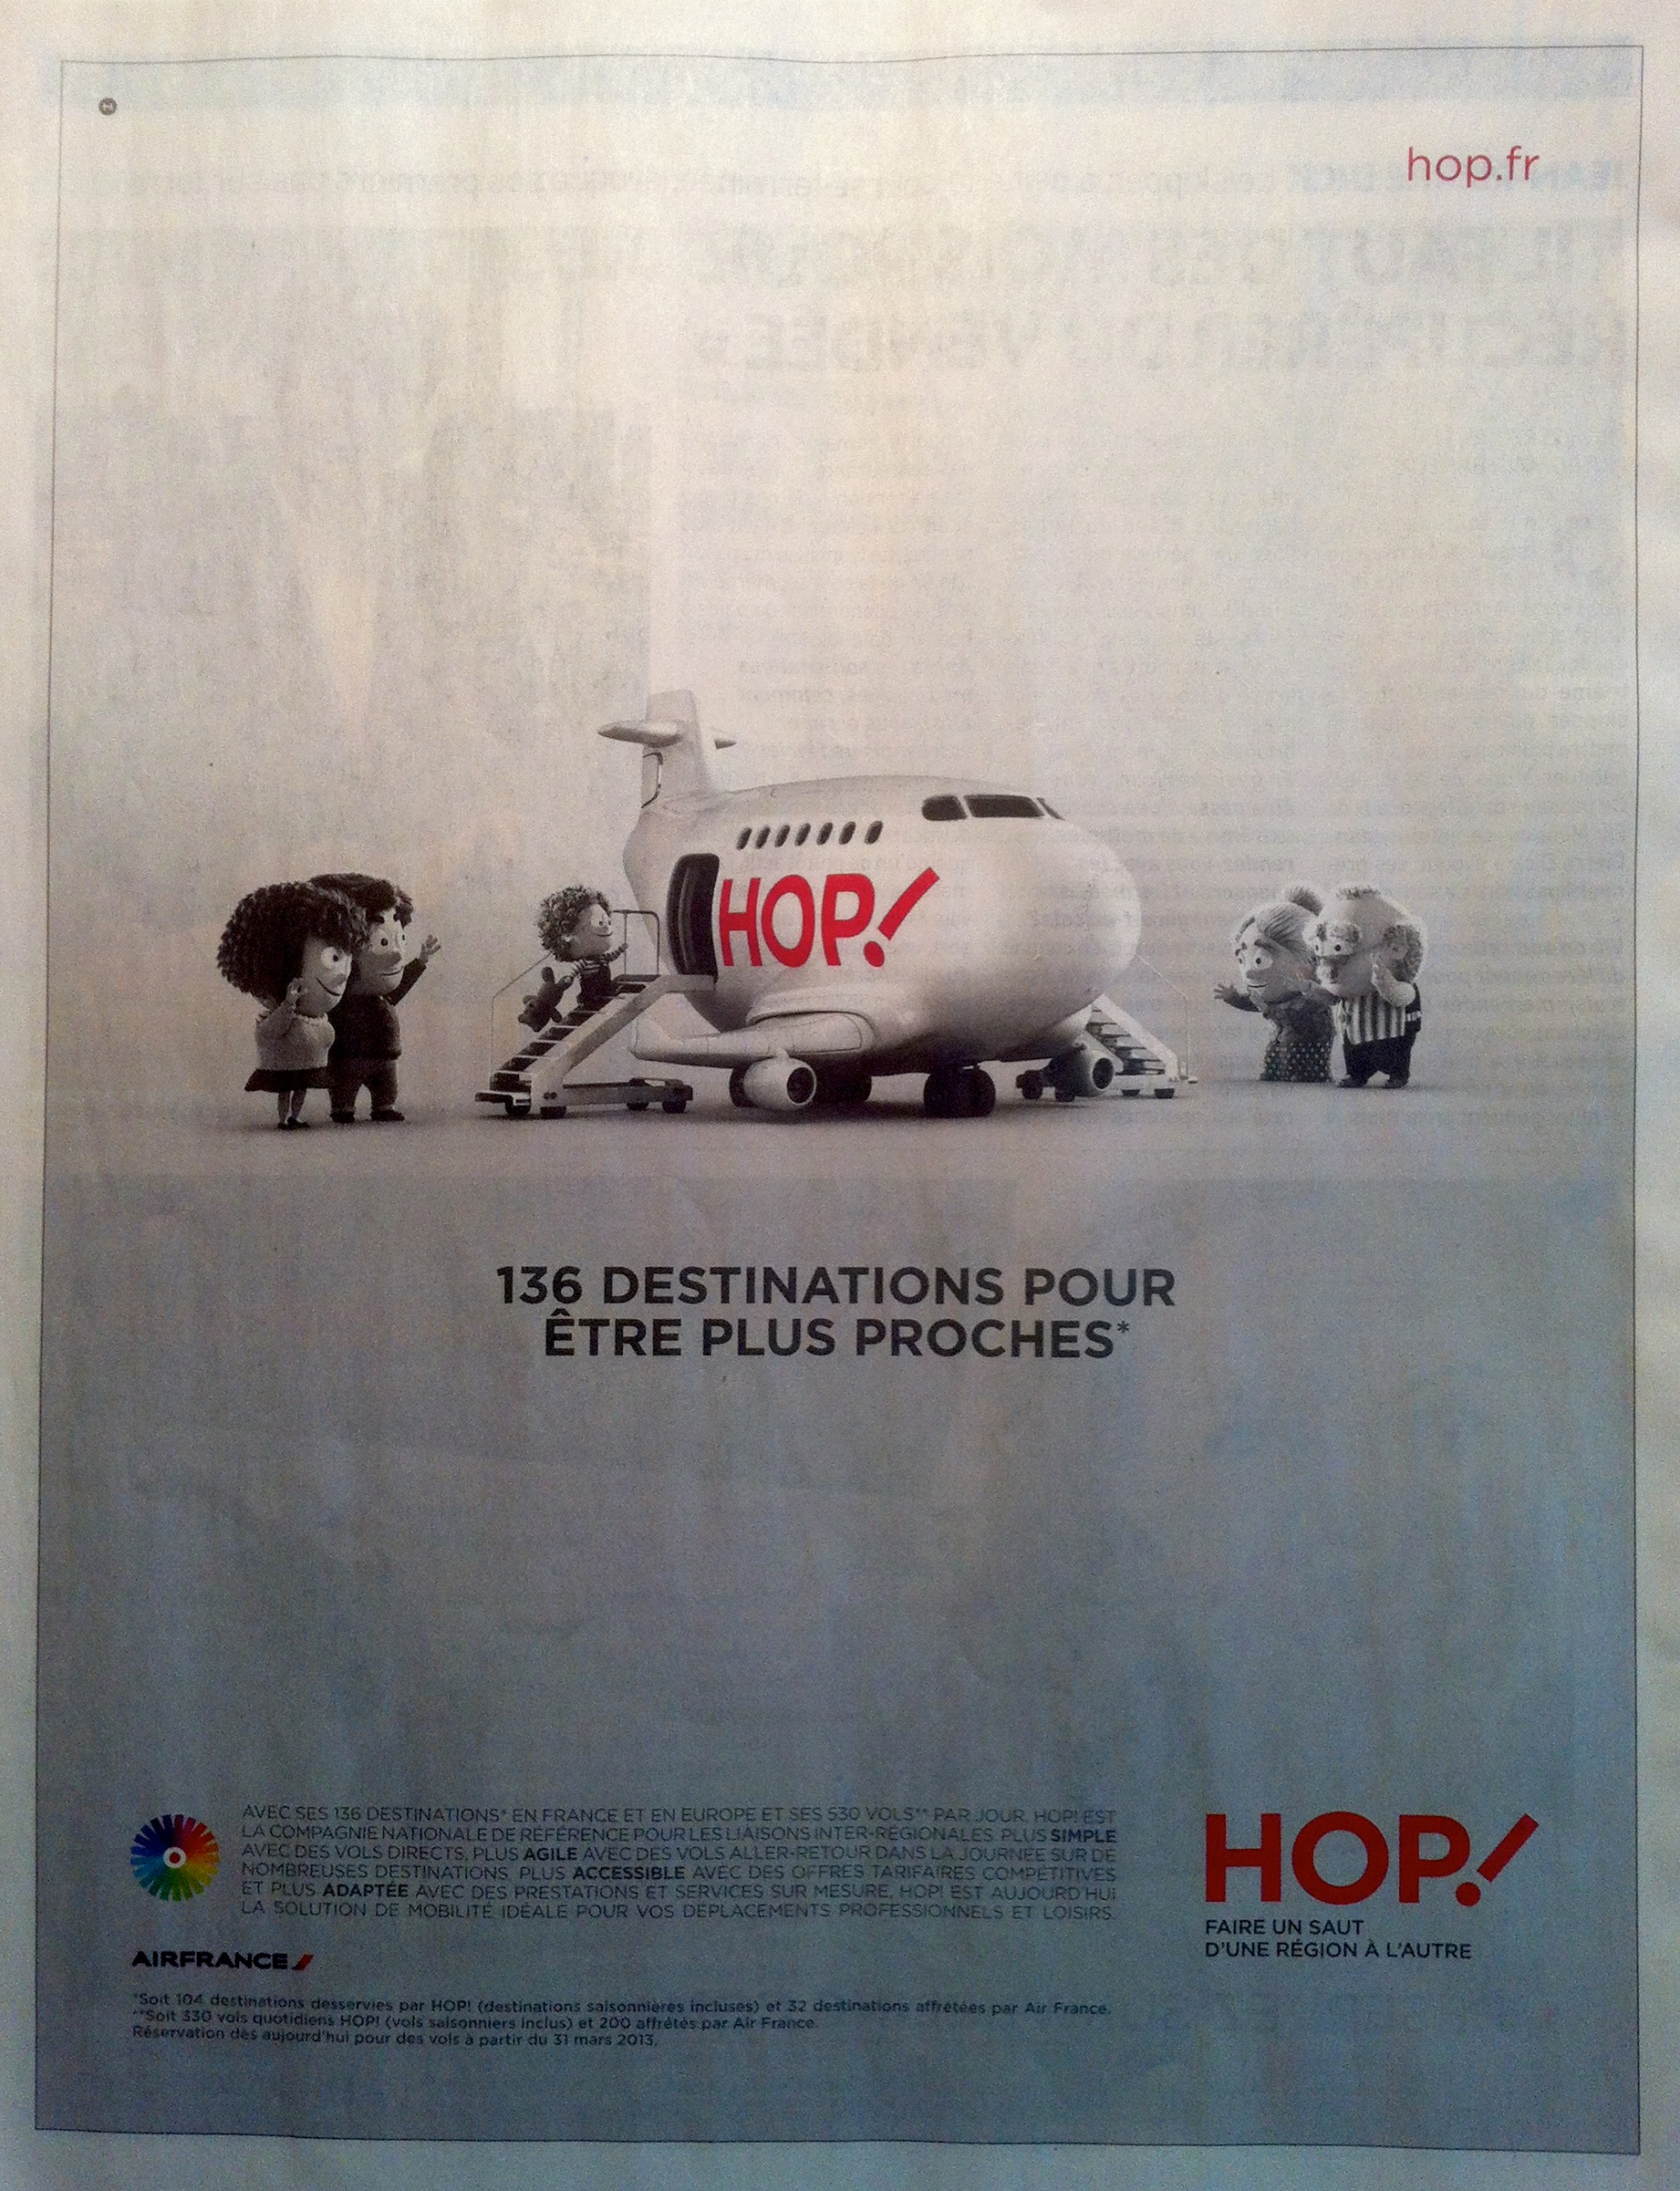 Air France HOP publicite, The Myndset Digital Marketing et Strategie de marque